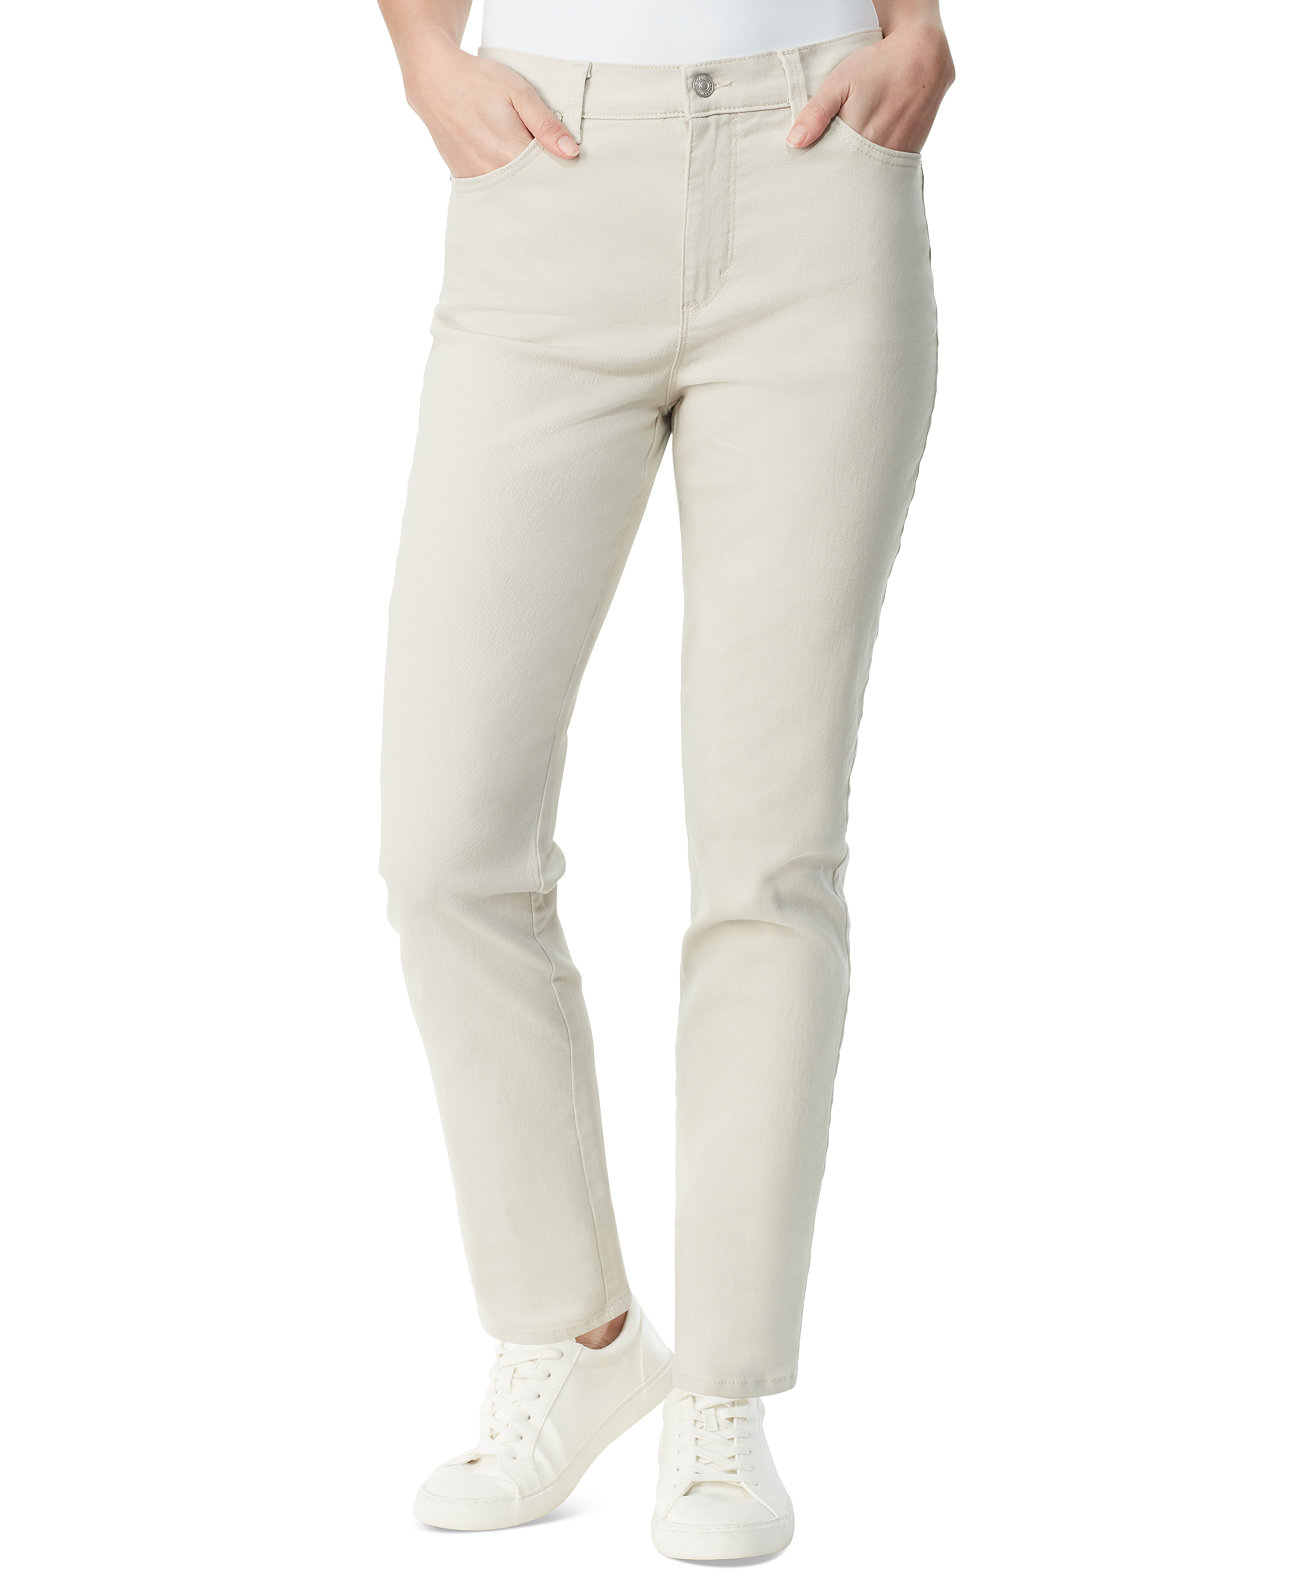 Женские прямые джинсы из цветного твила Amanda Gloria Vanderbilt